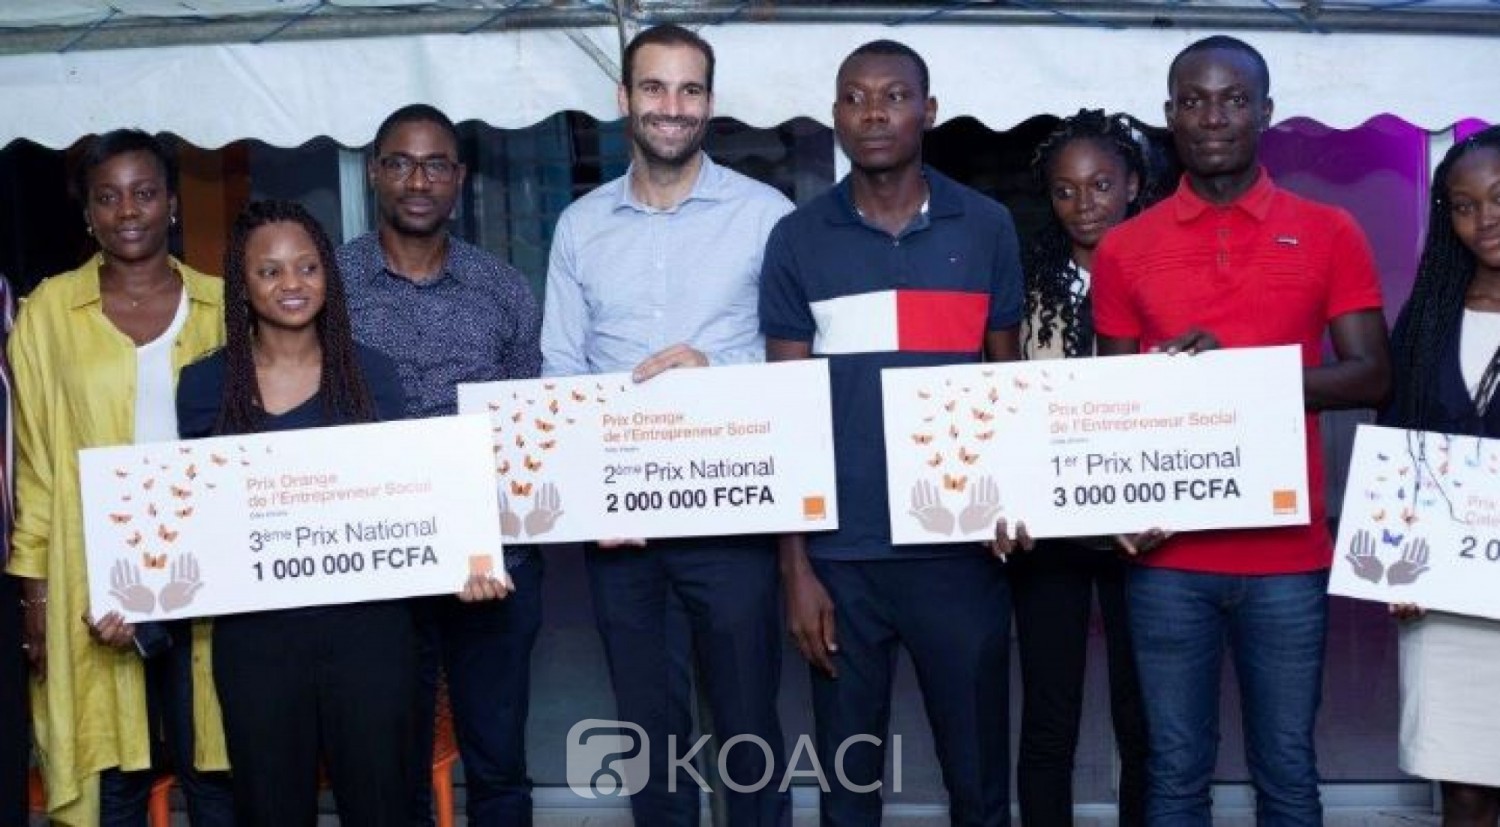 Côte d'Ivoire: 9ème édition à Abidjan du prix orange entrepreneur social Côte d'Ivoire 2019, un start-up venue de Daloa lauréate du concours